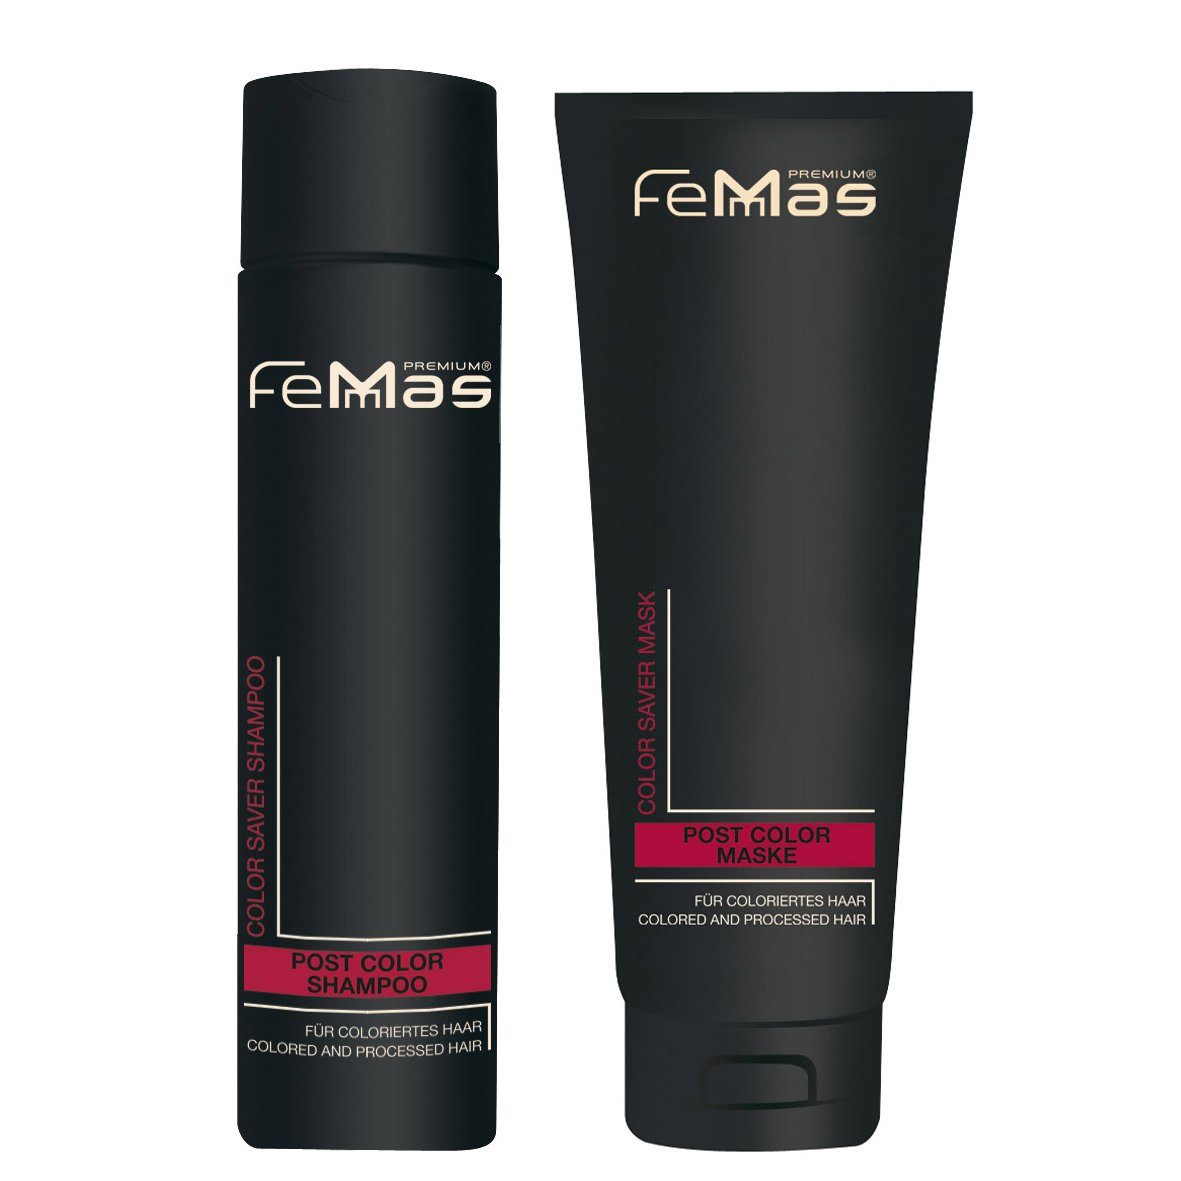 Femmas Premium Haarpflege-Set FemMas Color Saver Shampoo 250ml + Color Saver Maske 250ml